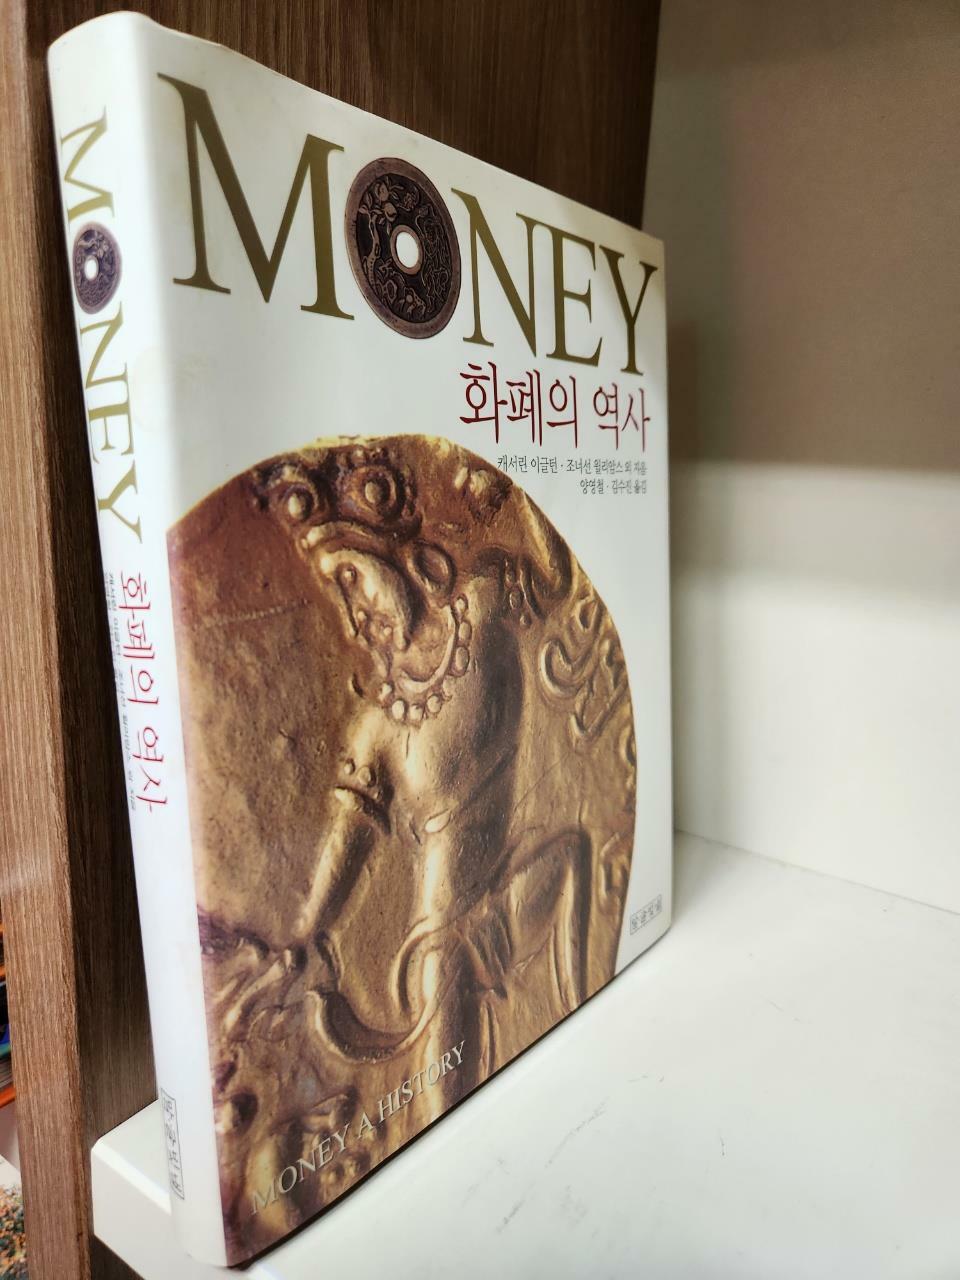 [중고] Money 화폐의 역사